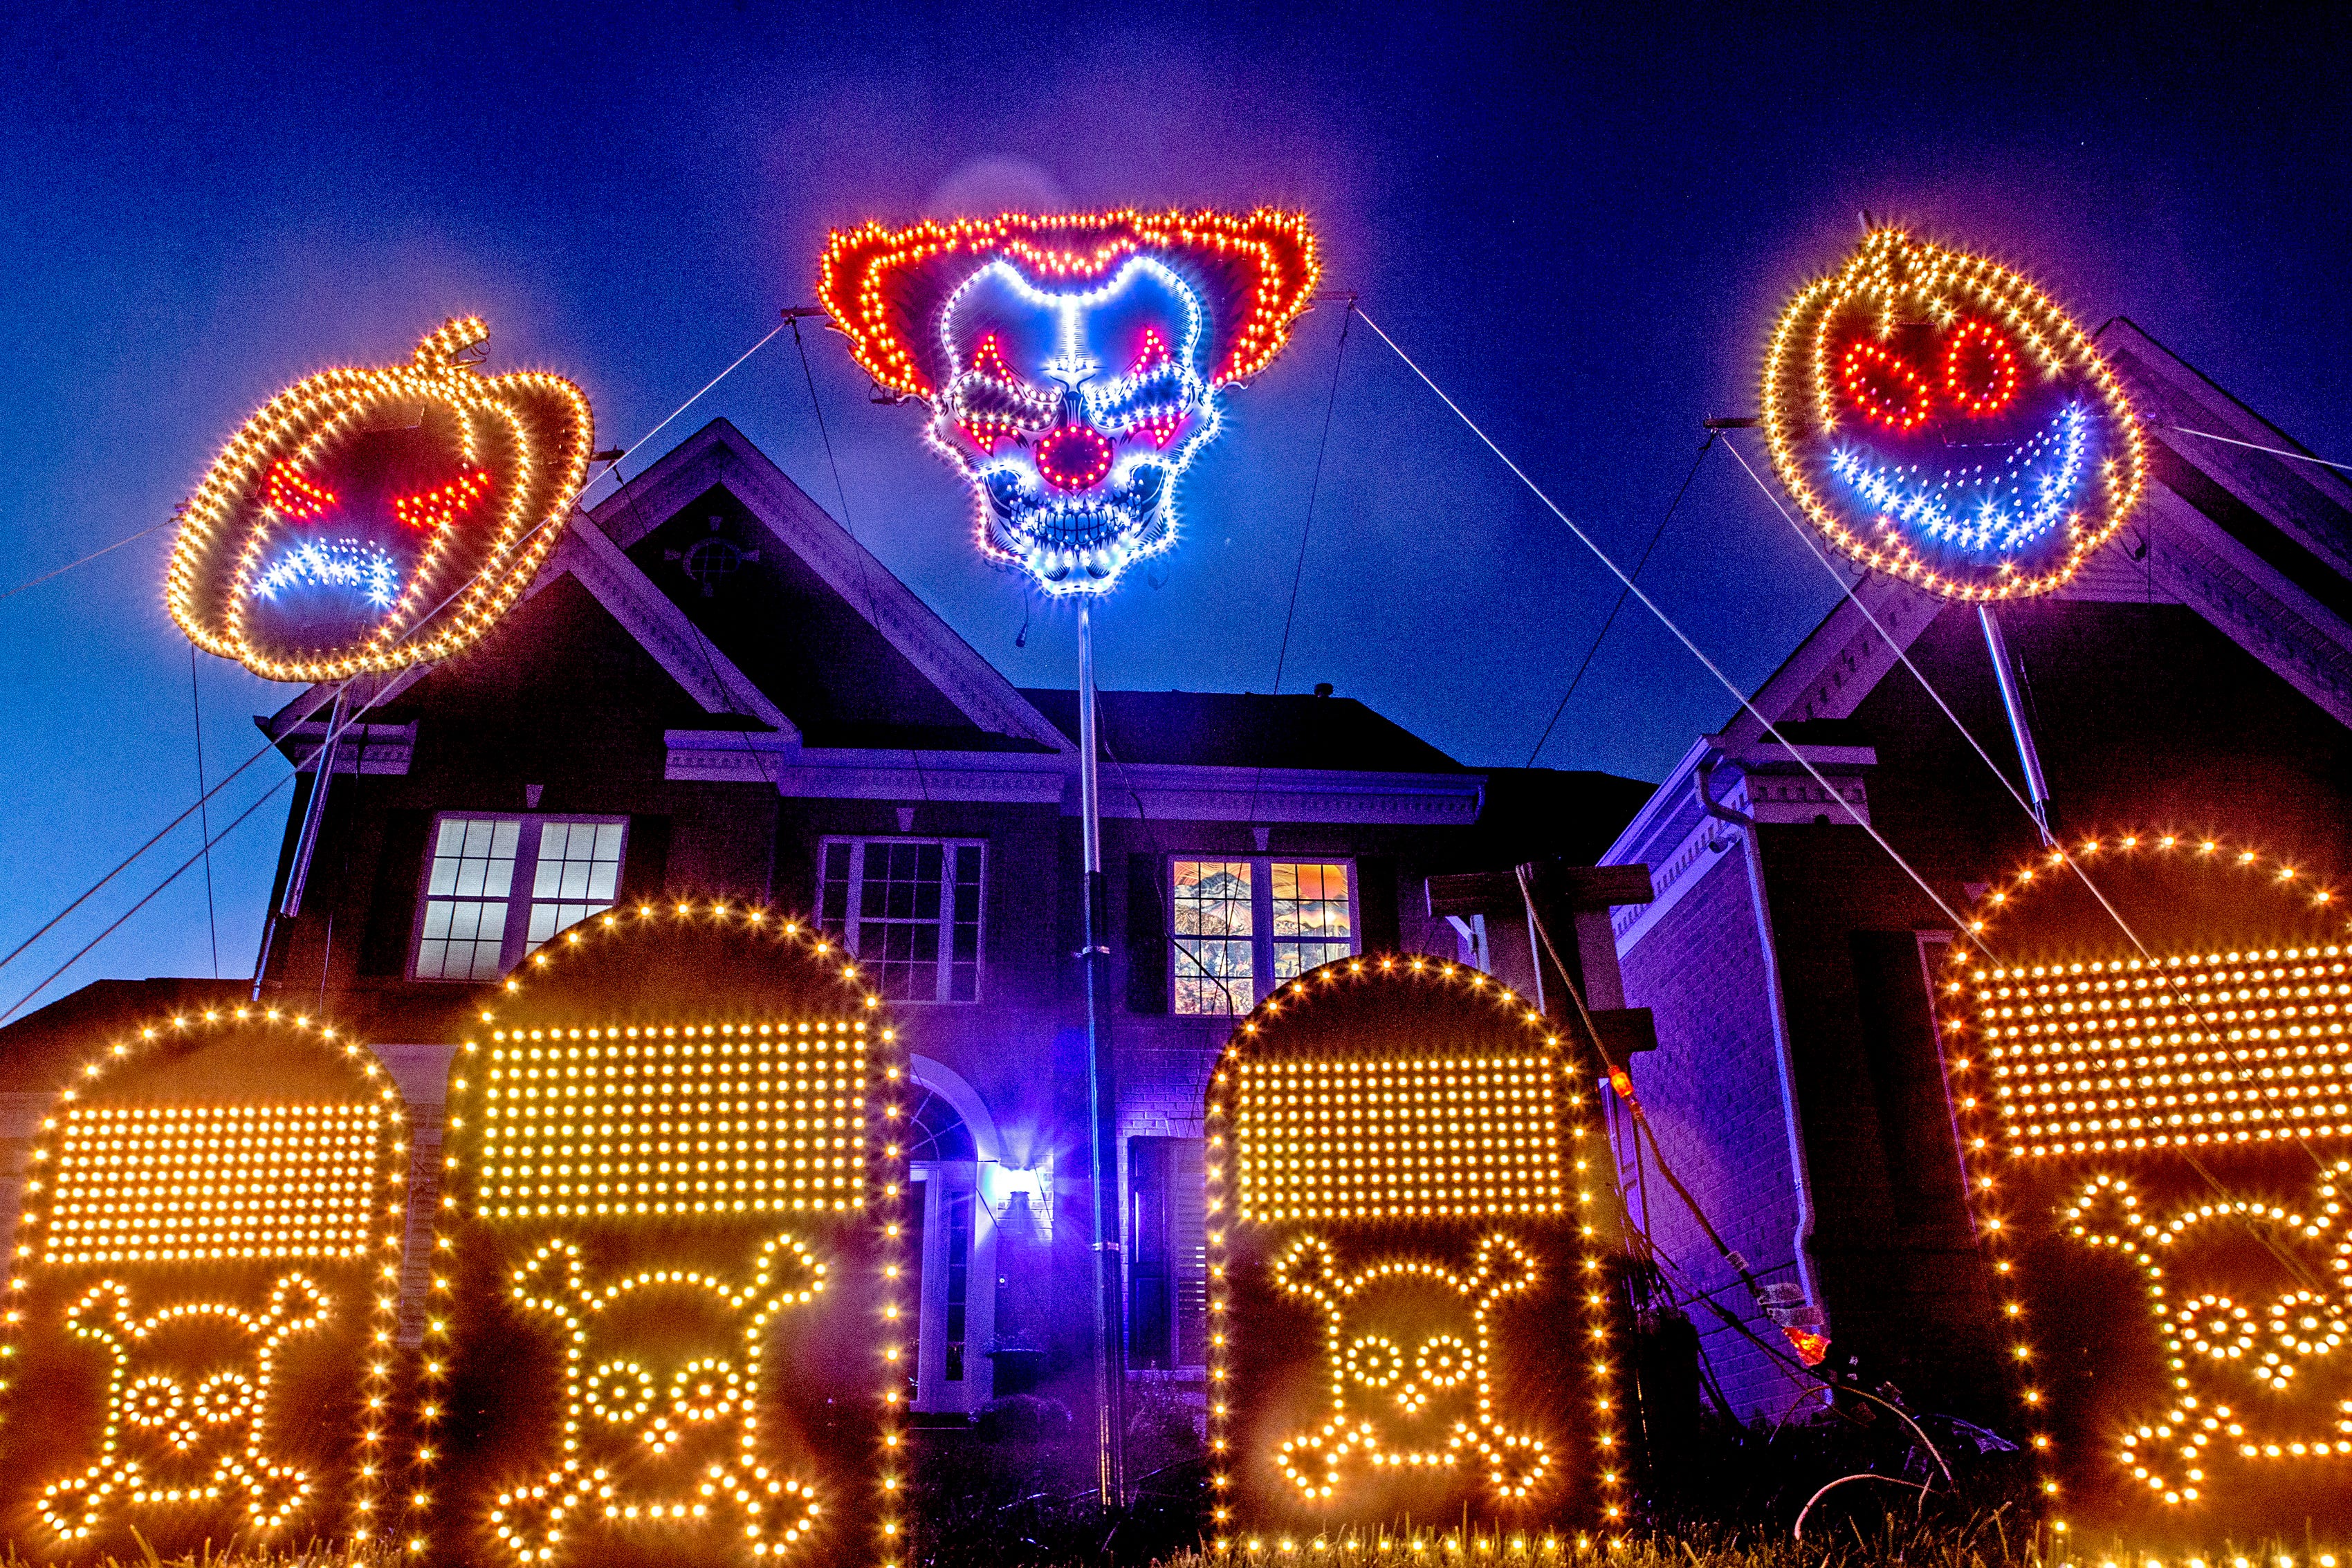 Løft dig op vægt overskridelsen Delaware house lights up for Halloween with huge holiday display